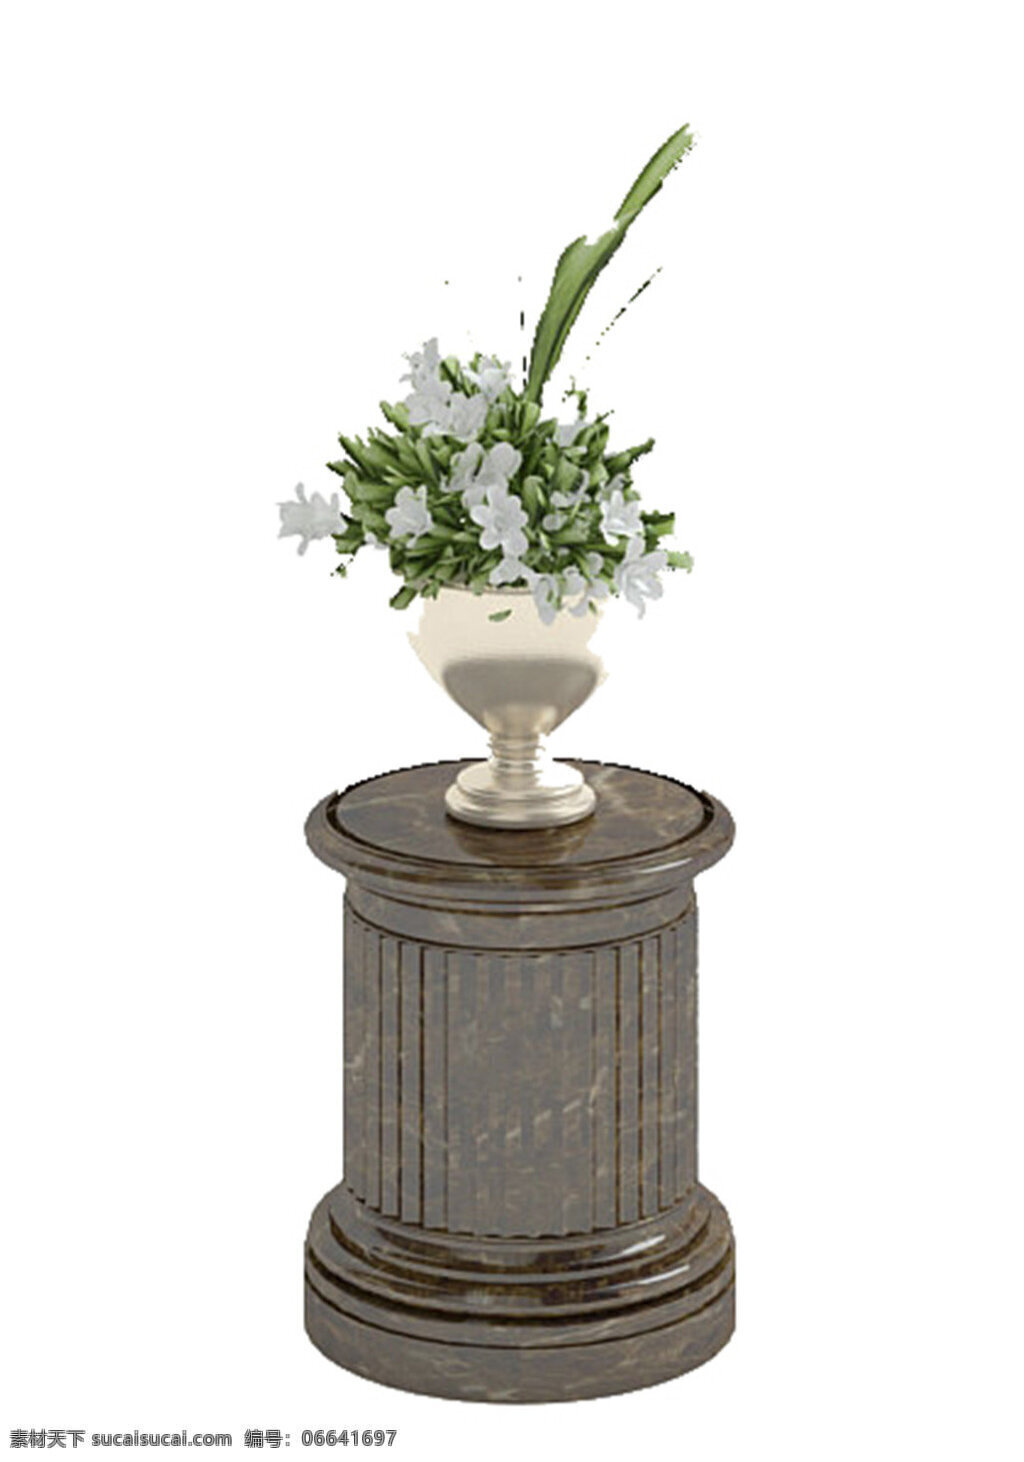 模板下载 素材图片 模型 桌 花瓶 装饰品 花 装饰画 欧式边几 max2009 陈设品 白色